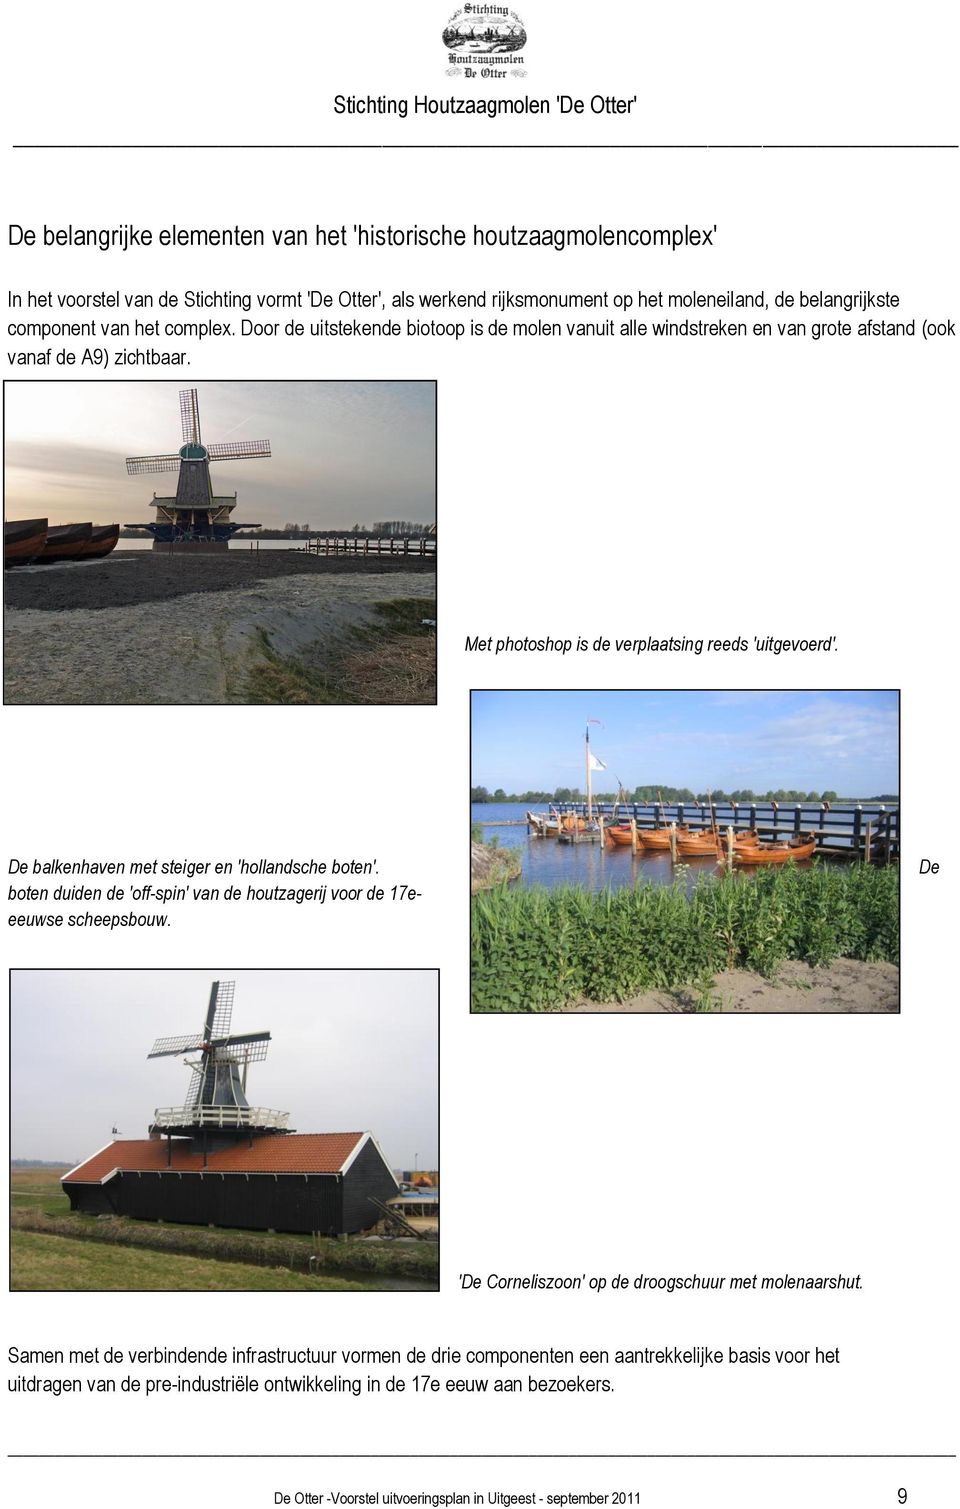 De balkenhaven met steiger en 'hollandsche boten'. boten duiden de 'off-spin' van de houtzagerij voor de 17eeeuwse scheepsbouw. De 'De Corneliszoon' op de droogschuur met molenaarshut.